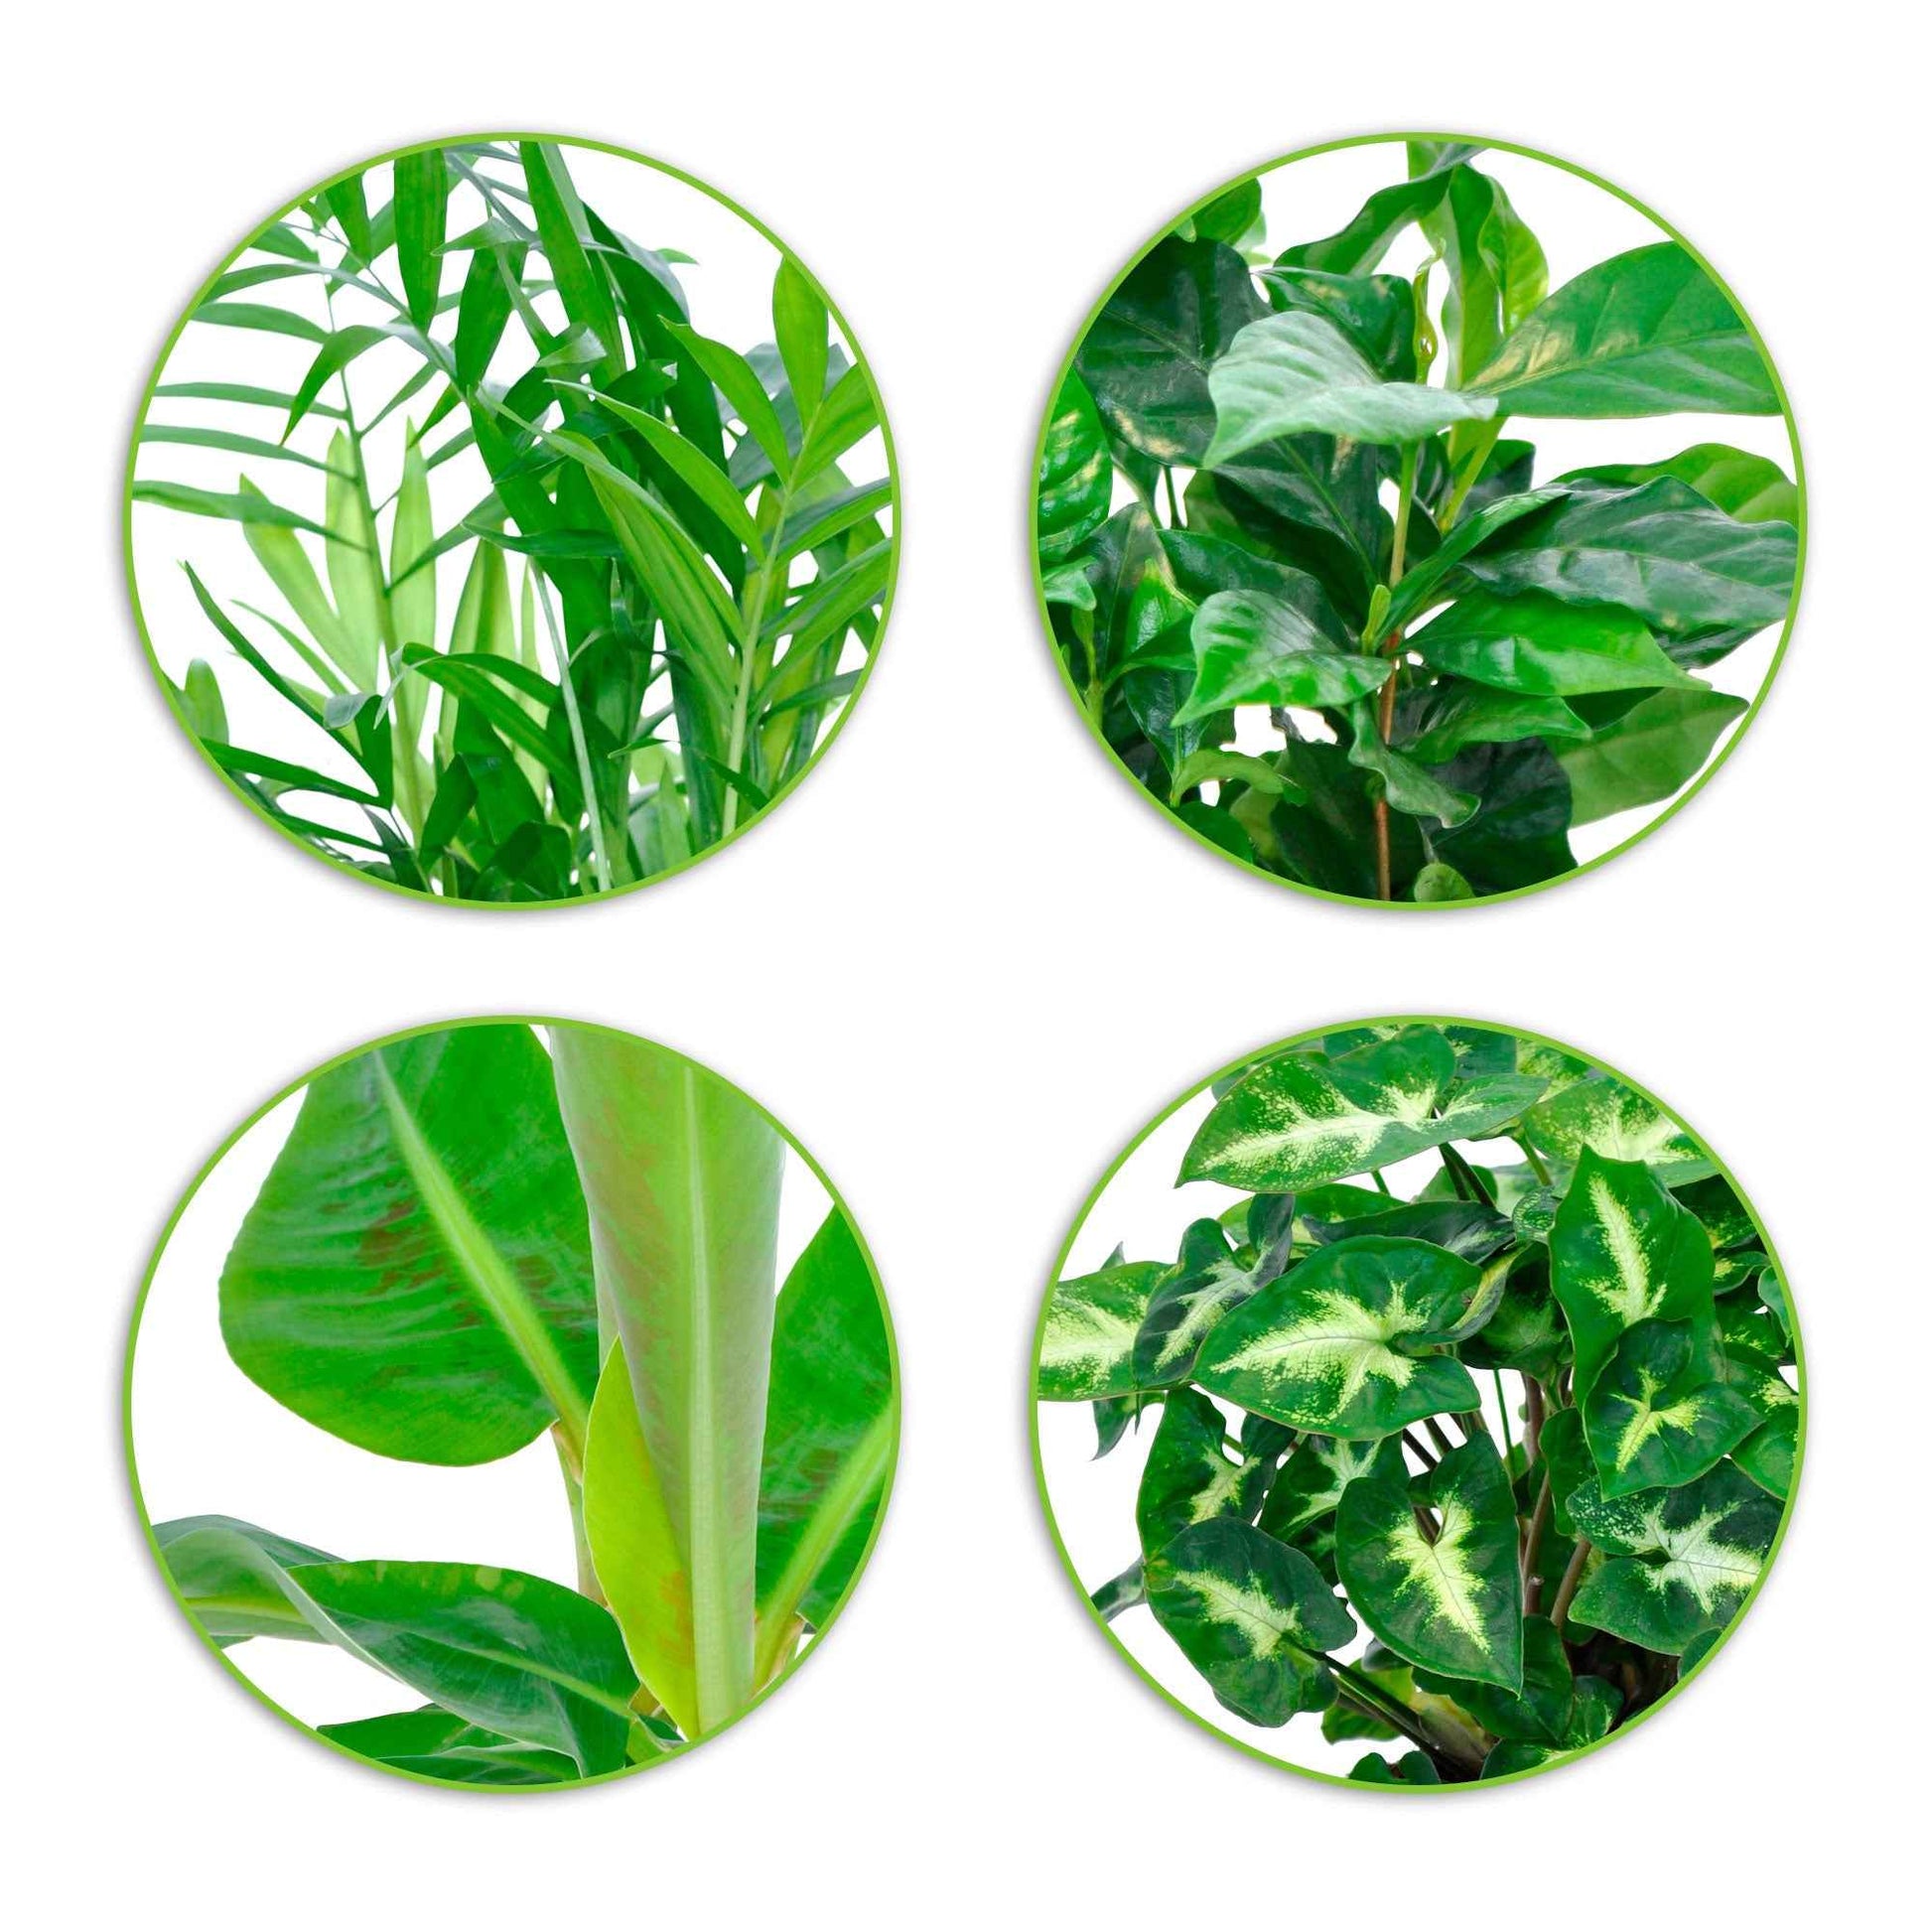 Tropische Pflanzen Mischung inkl. Ziertöpfe, grau (x4) - Chamaedorea, Syngonium, Musa, Coffea 'Fresh' - Zimmerpflanzen mit Ziertopf